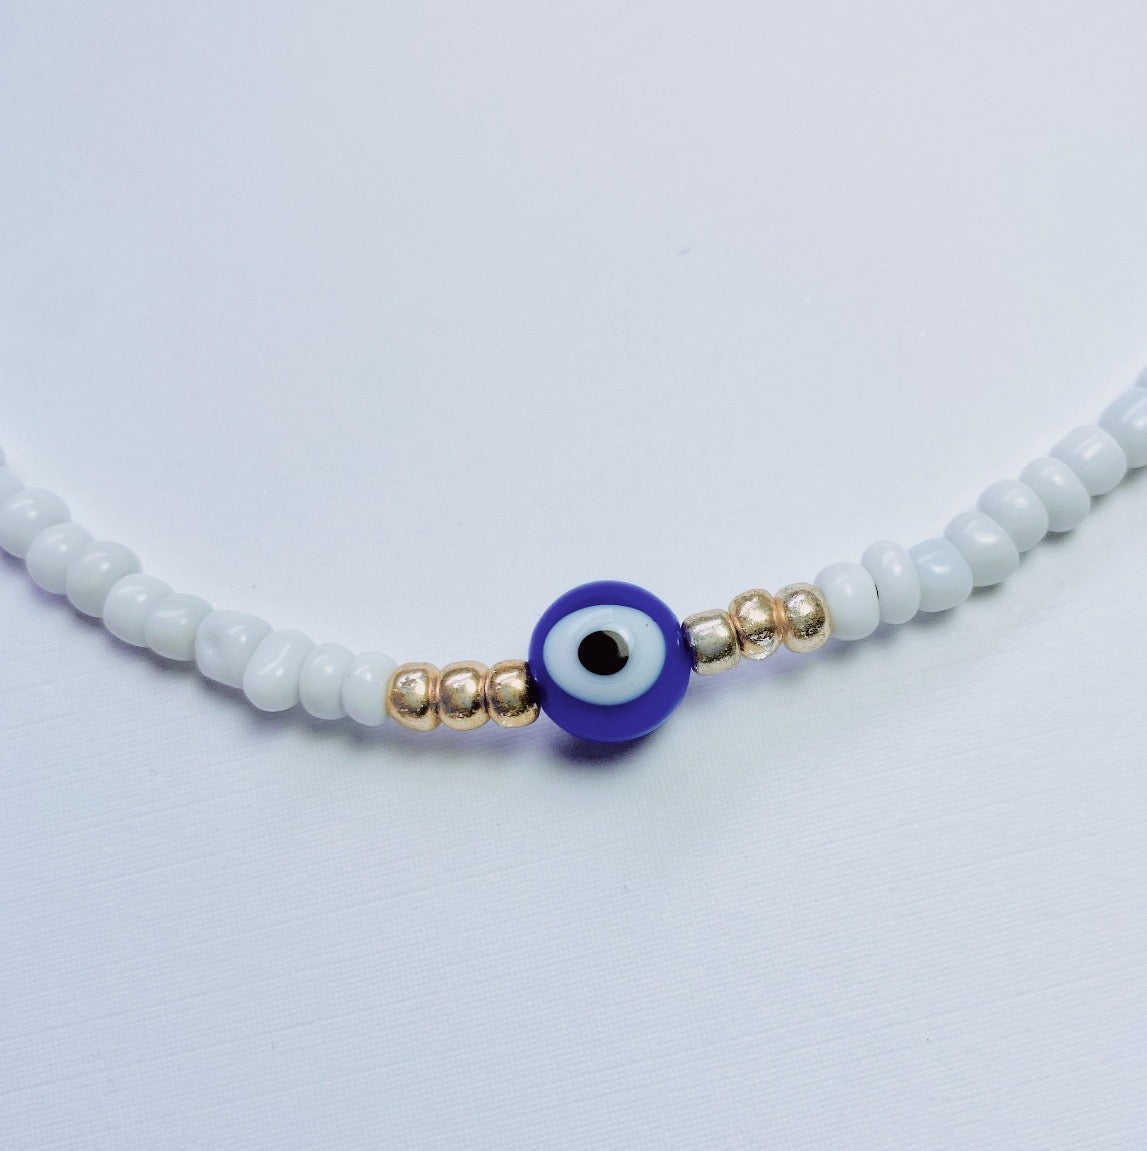 Evil Eye Bead Bracelet, Seed Beads Bracelet, Beaded Evil Eye, Blue Red White Beads 5